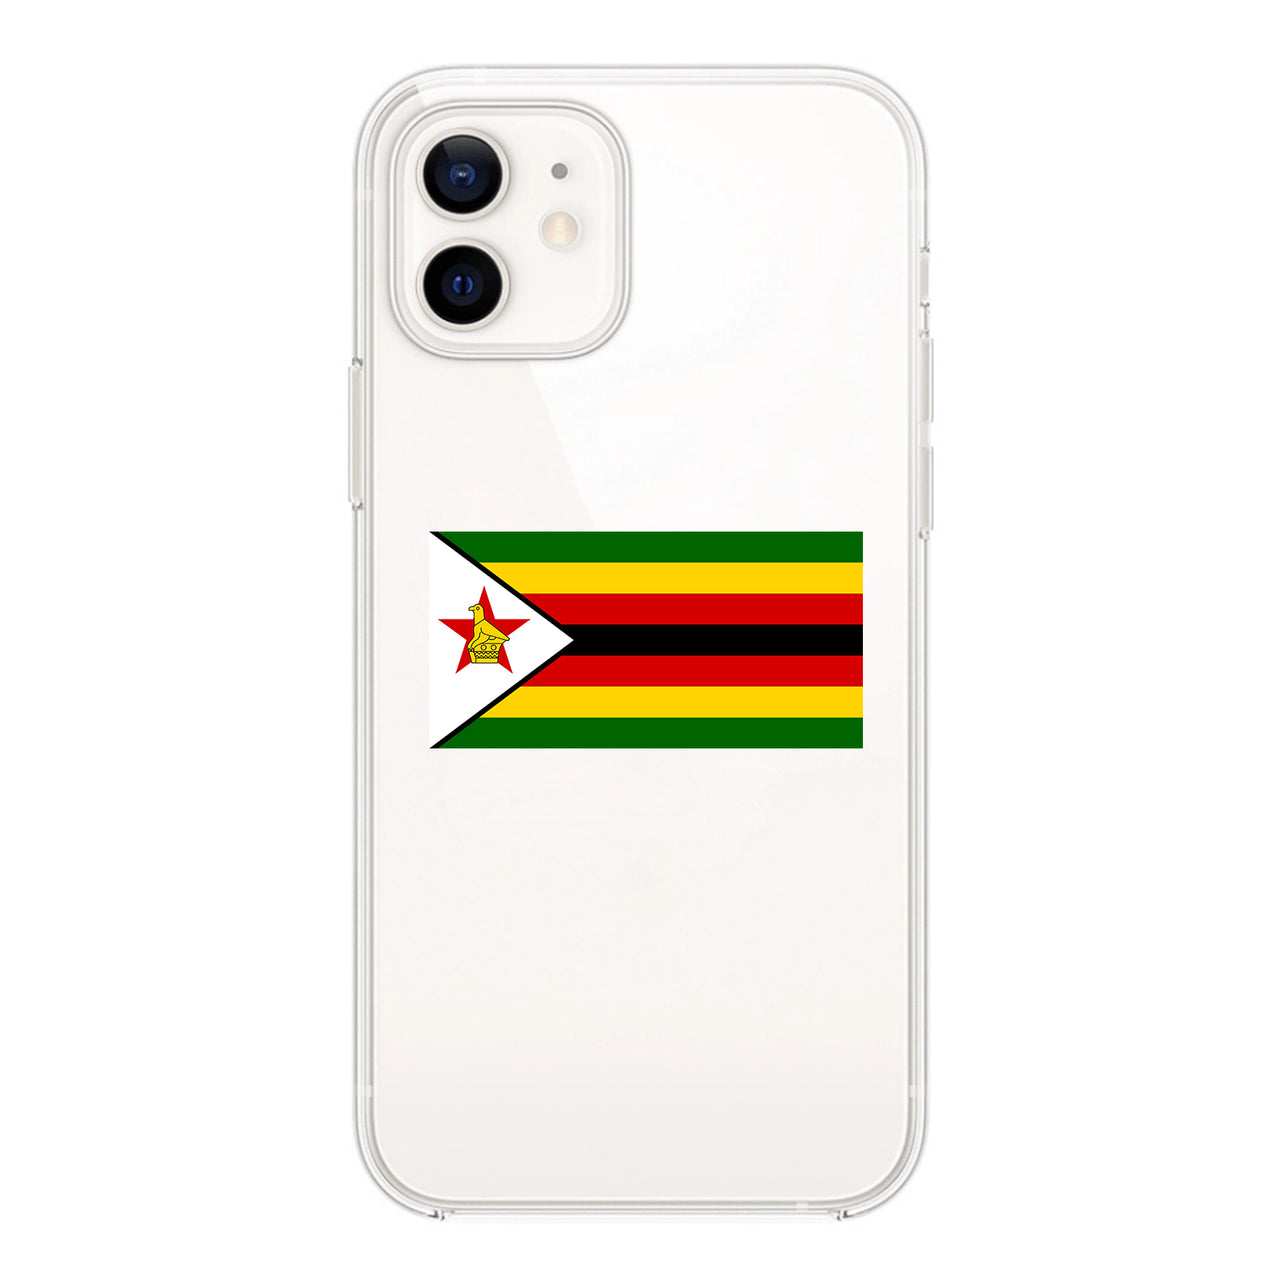 Zimbabwe Designed Transparent Silicone iPhone Cases